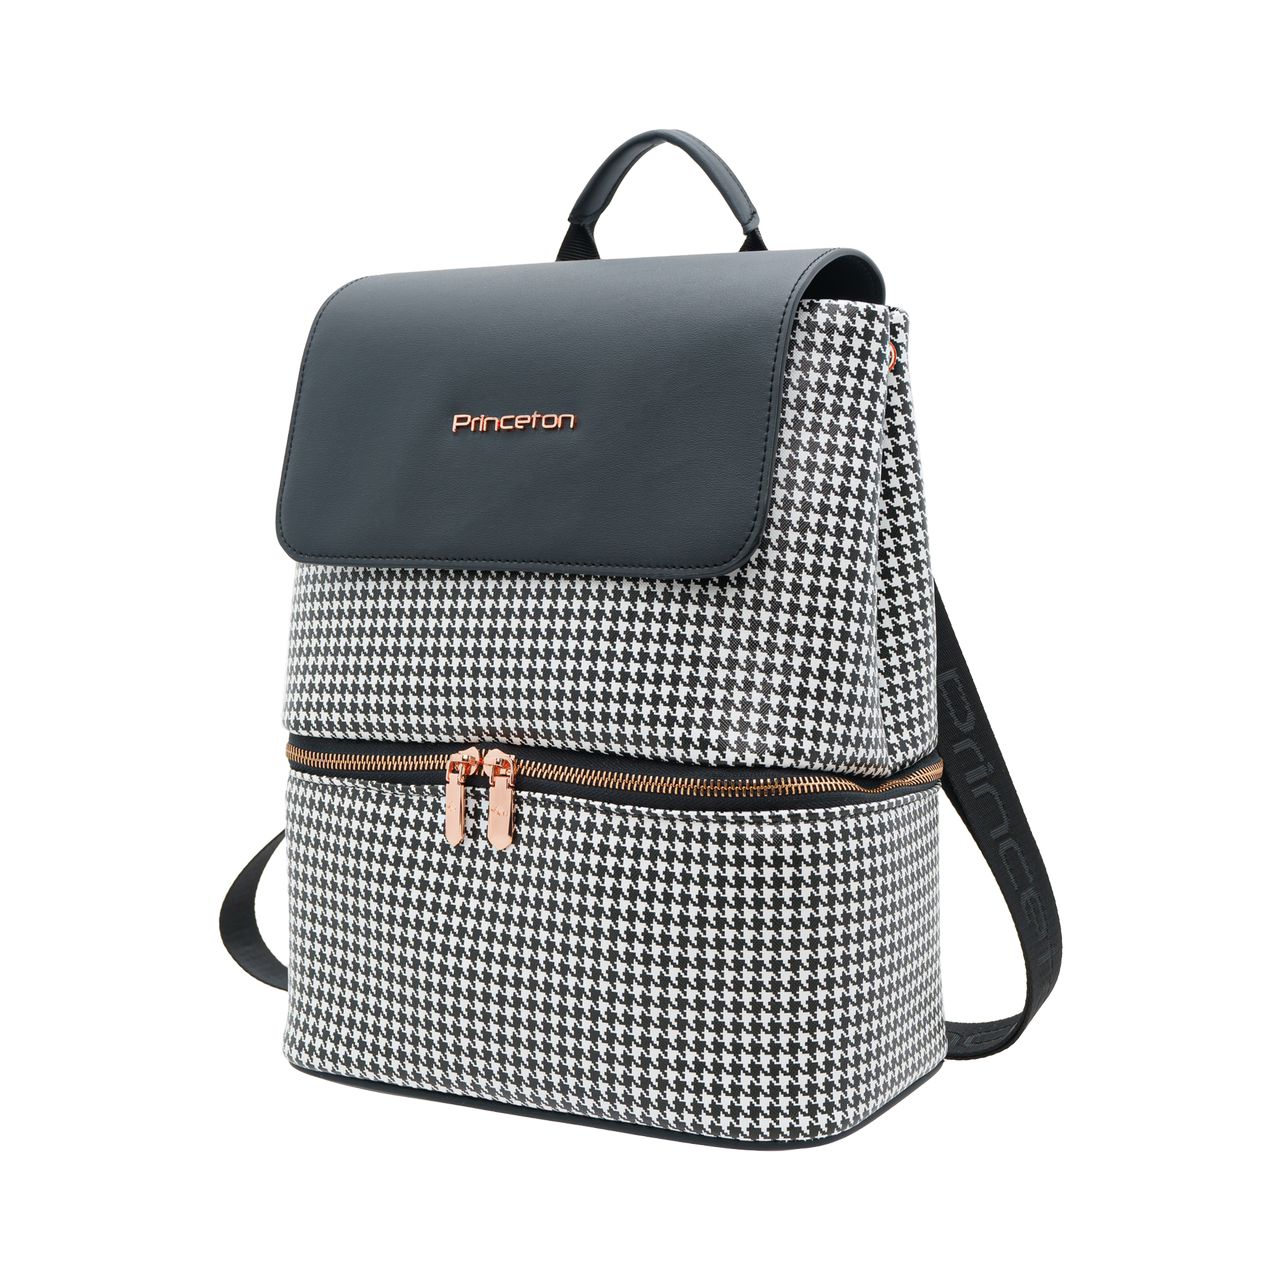 Carlton Edge Princeton Nylon 59 Cms Azure Softsided Cabin Luggage :  Amazon.in: Fashion